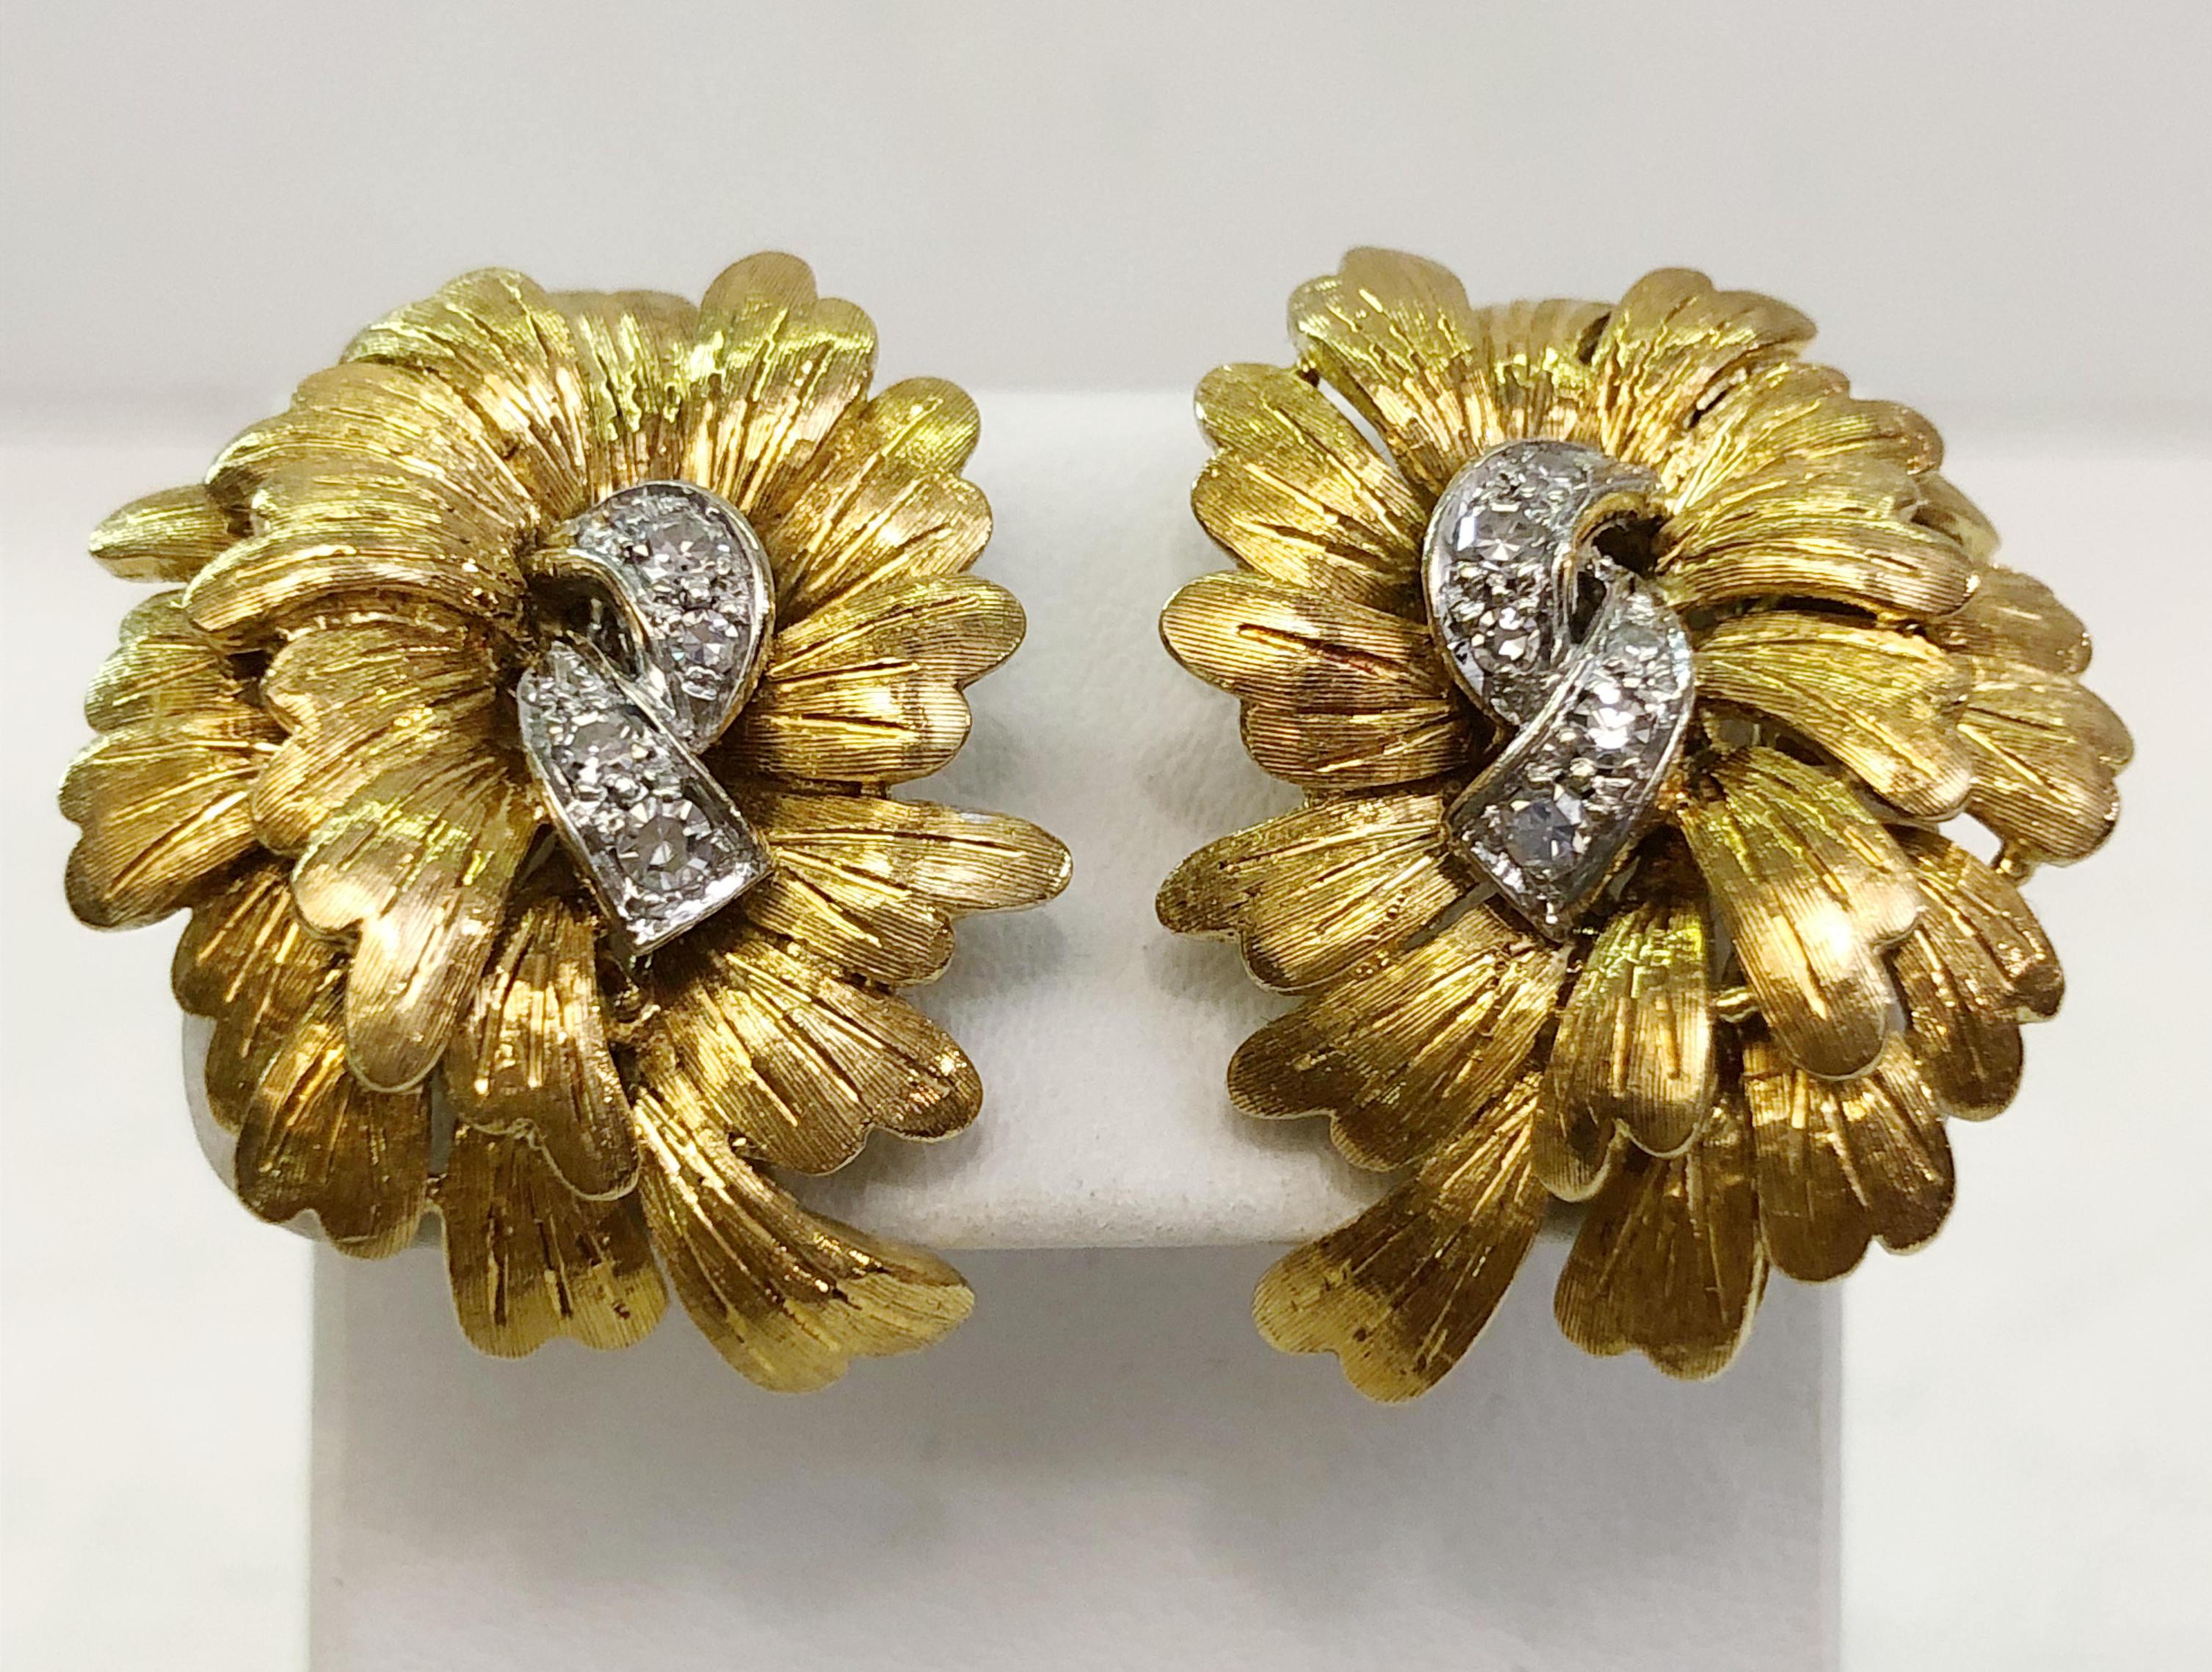 Paar Vintage-Ohrringe mit 18 Karat Gelbgold in Blattmotiv und Weißgold und Diamanten in der Mitte, Modell Buccellati / Made in Italy 1980er Jahre